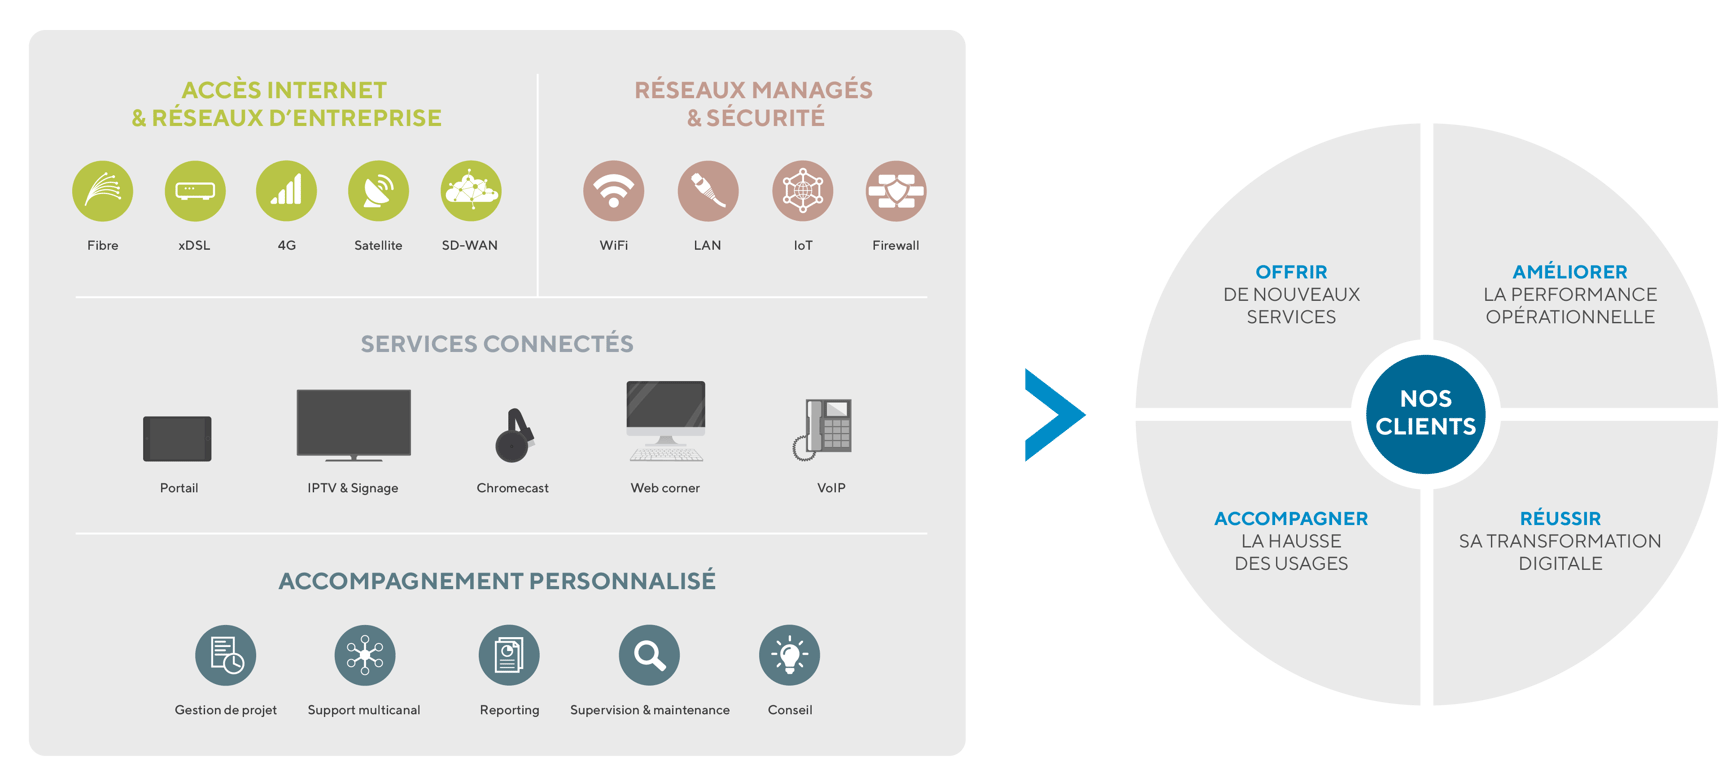 Réseaux managés et services de connectivité Wifirst